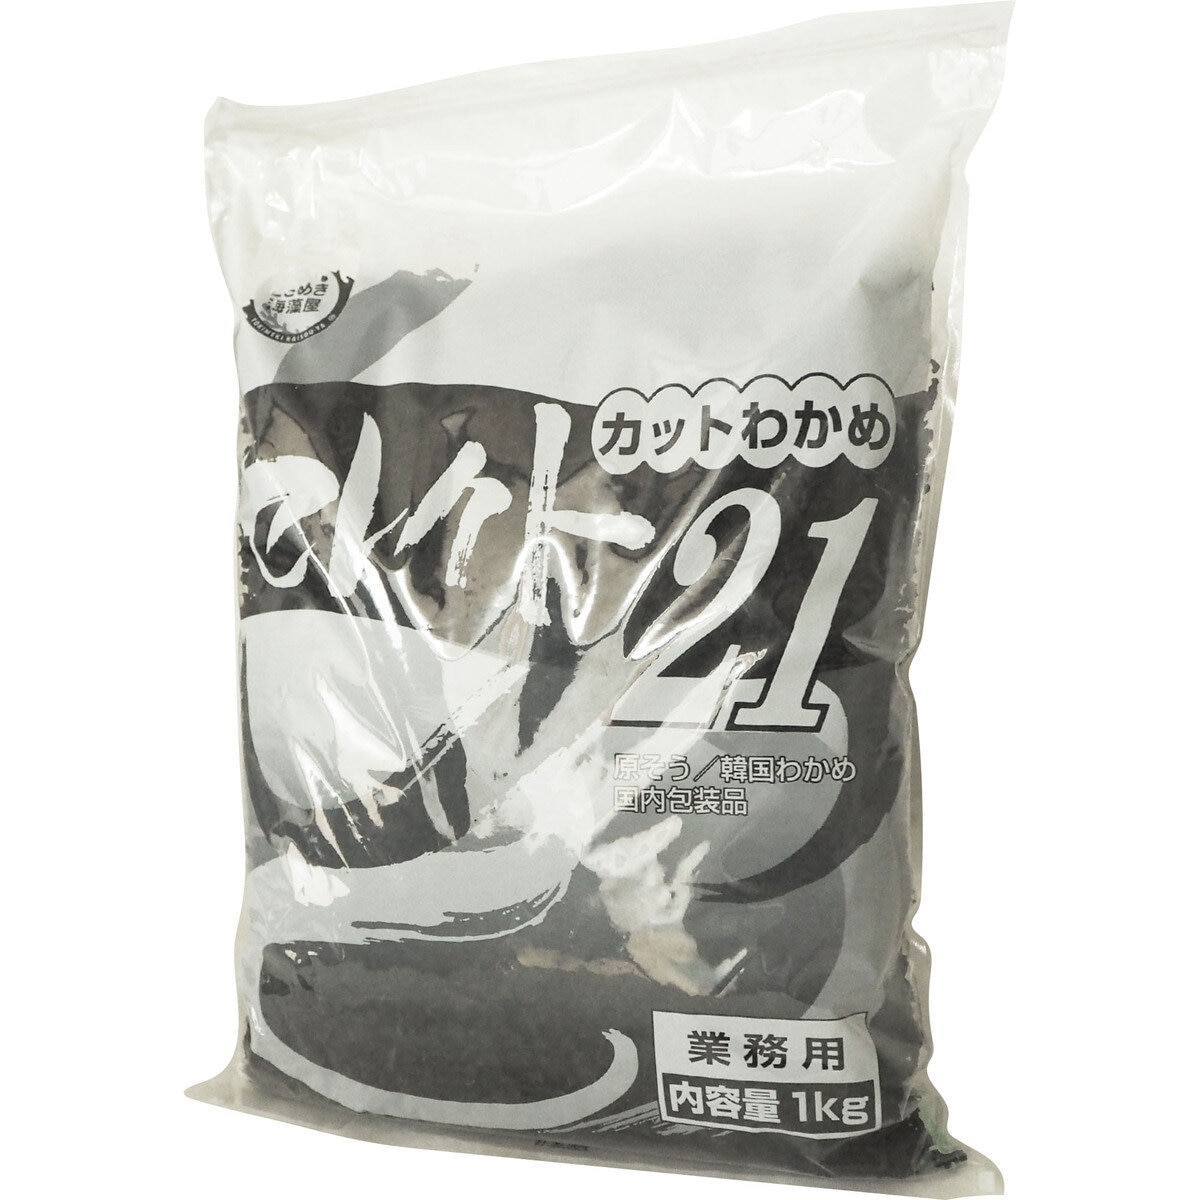 Costco　1kg　カットワカメセレクト21　Japan